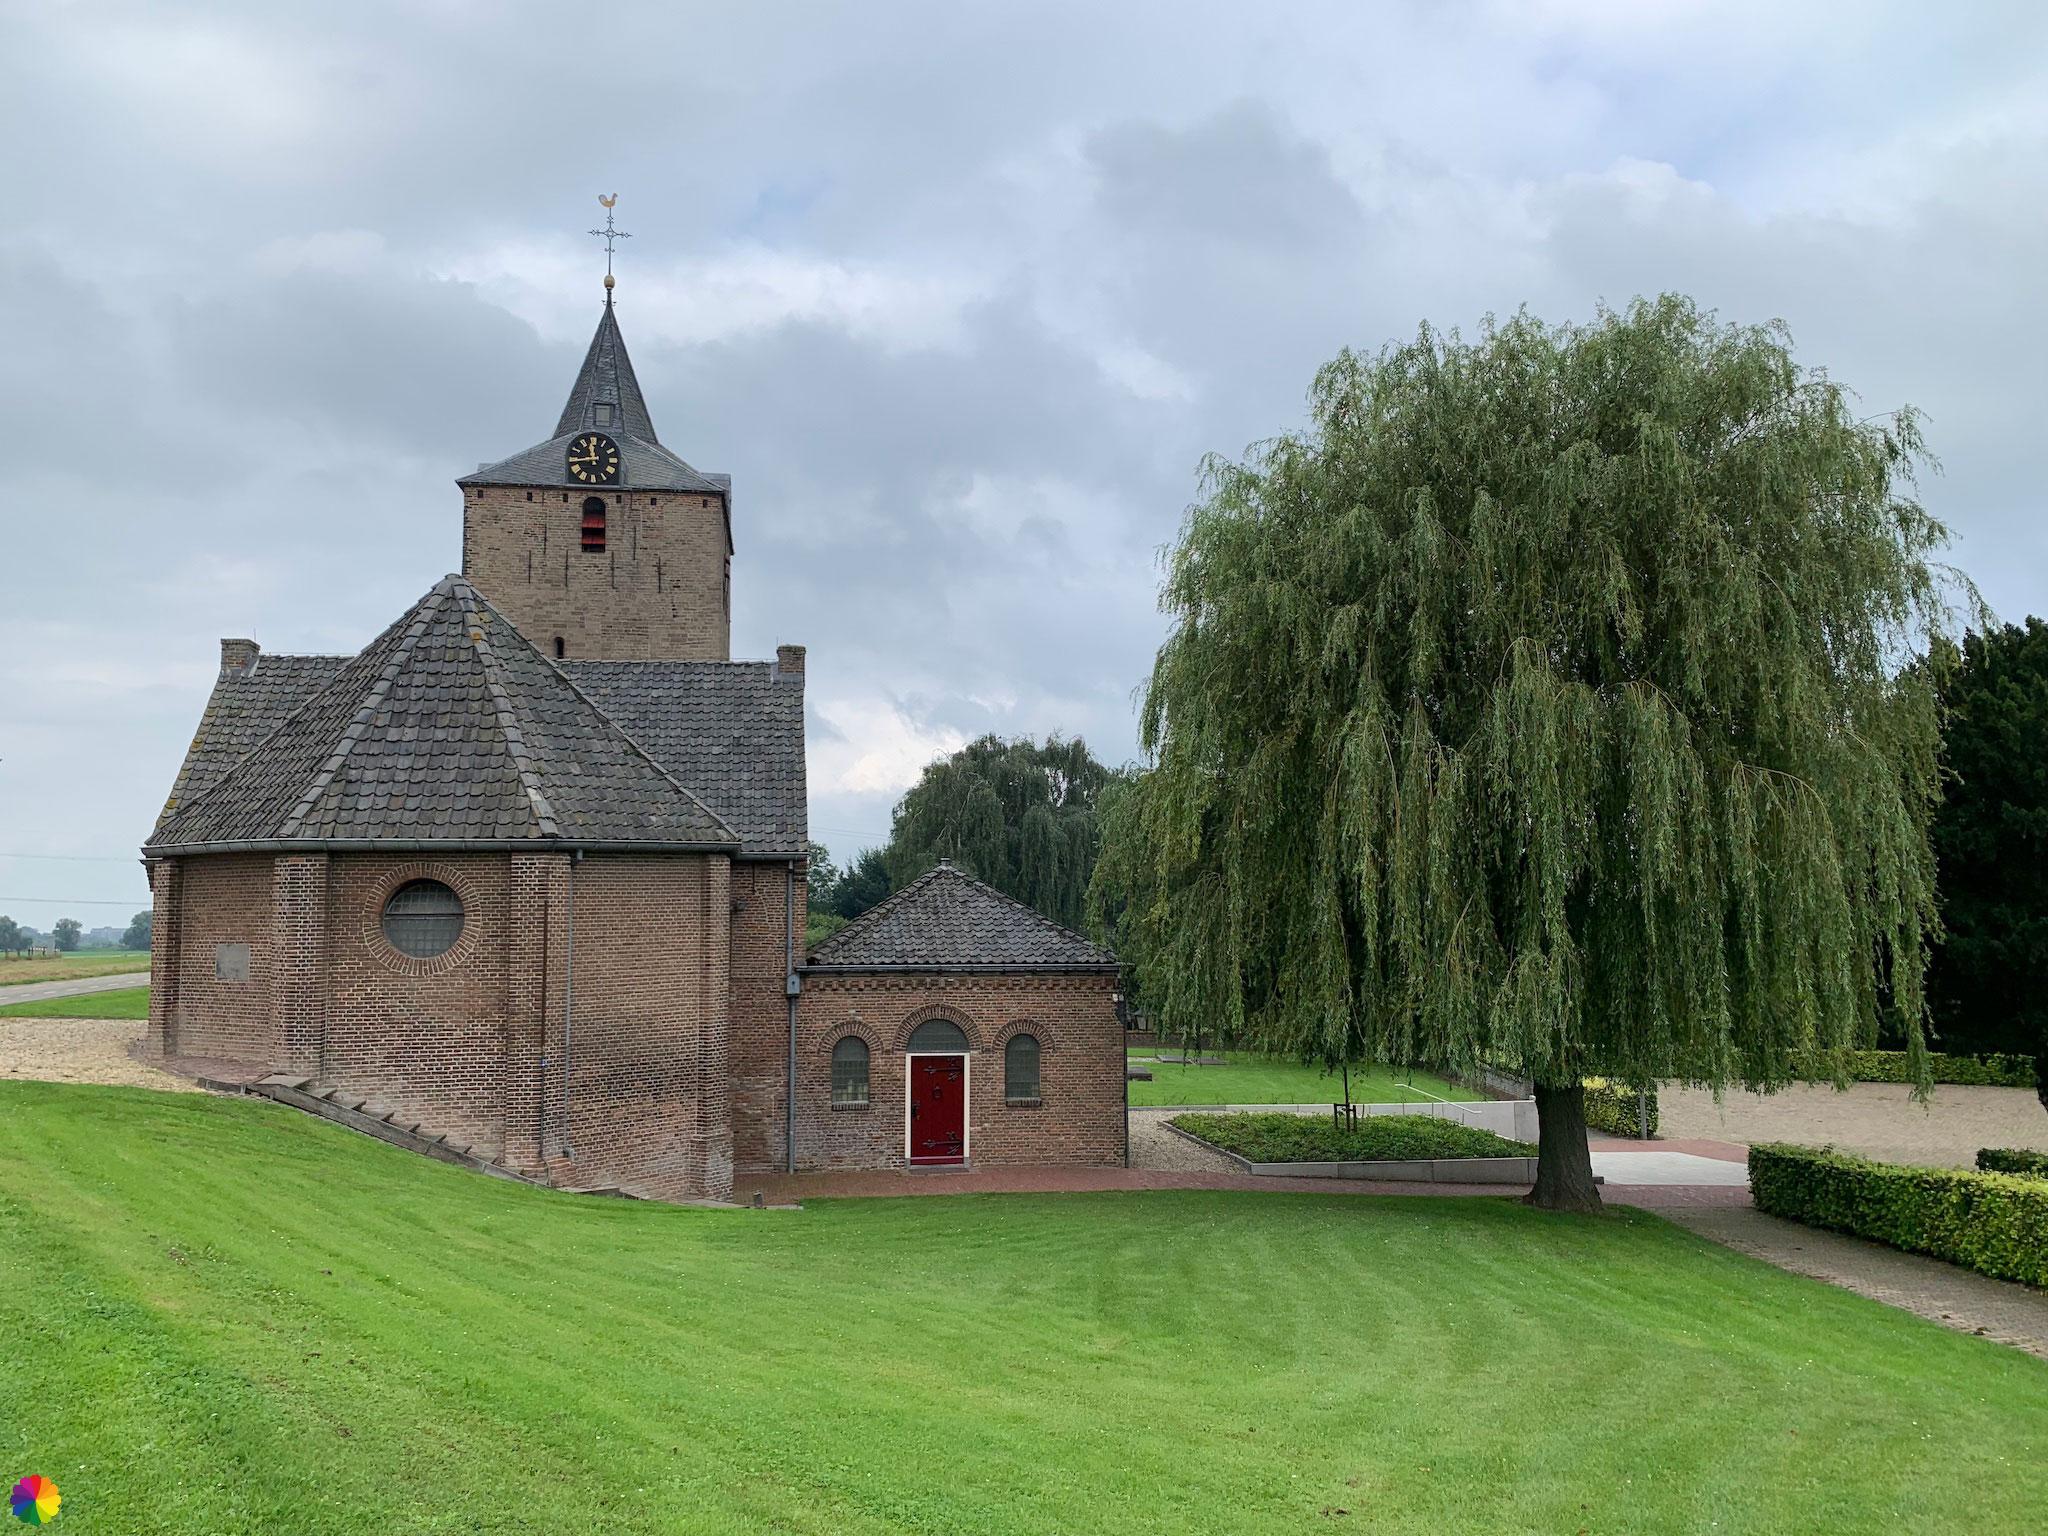 Little church in Dodewaard